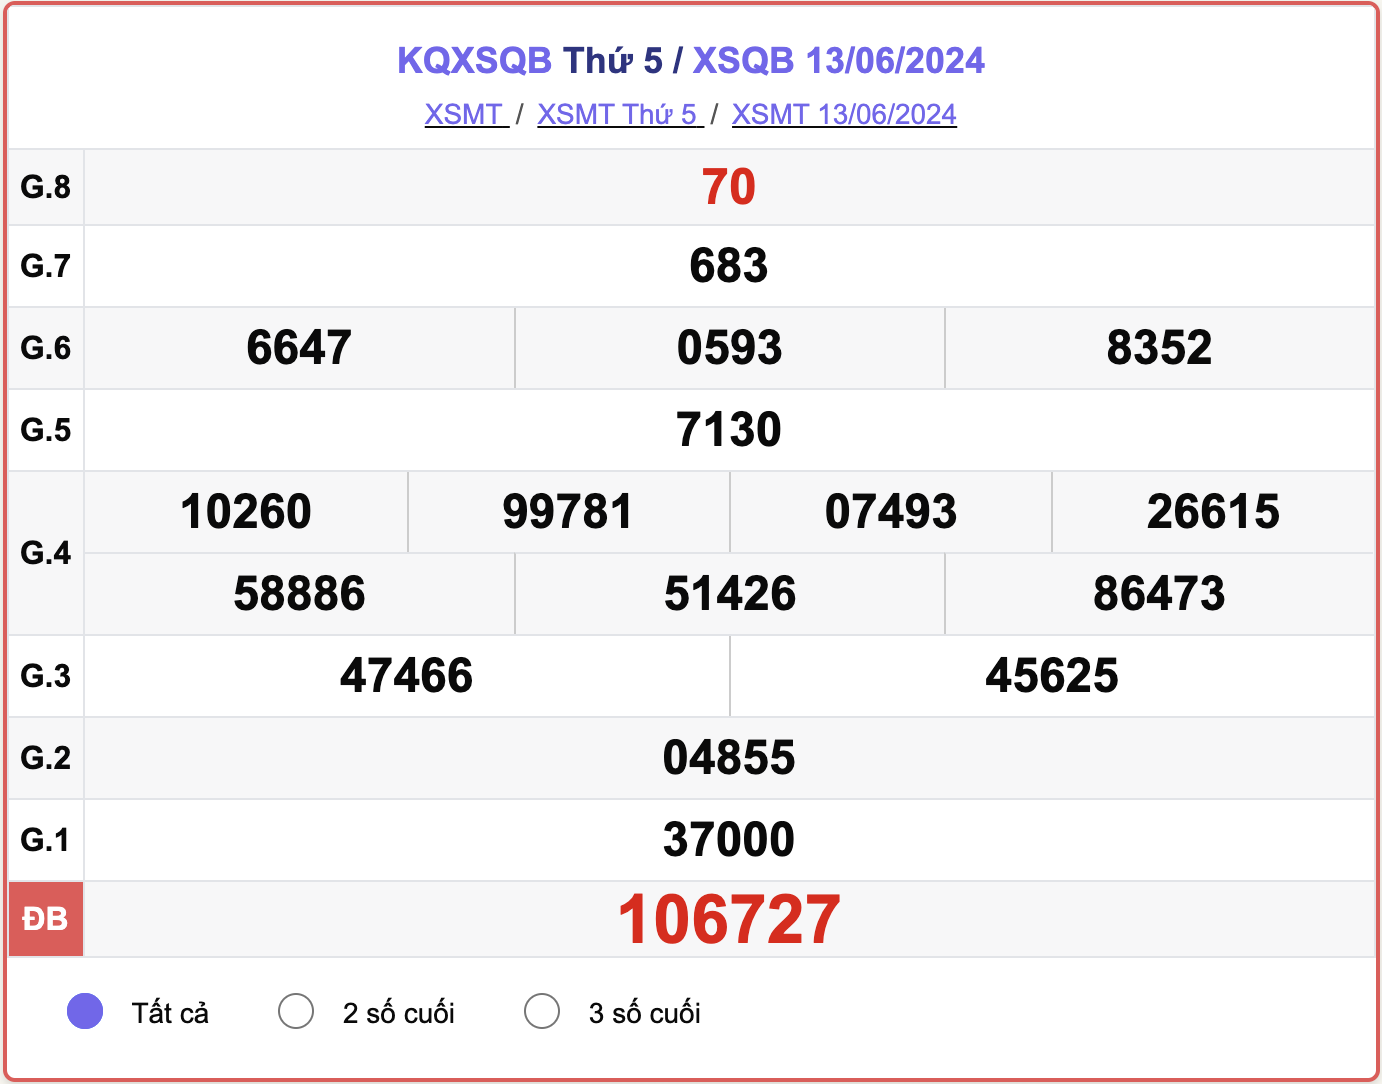 XSQB 13/6, kết quả xổ số Quảng Bình hôm nay 13/6/2024.